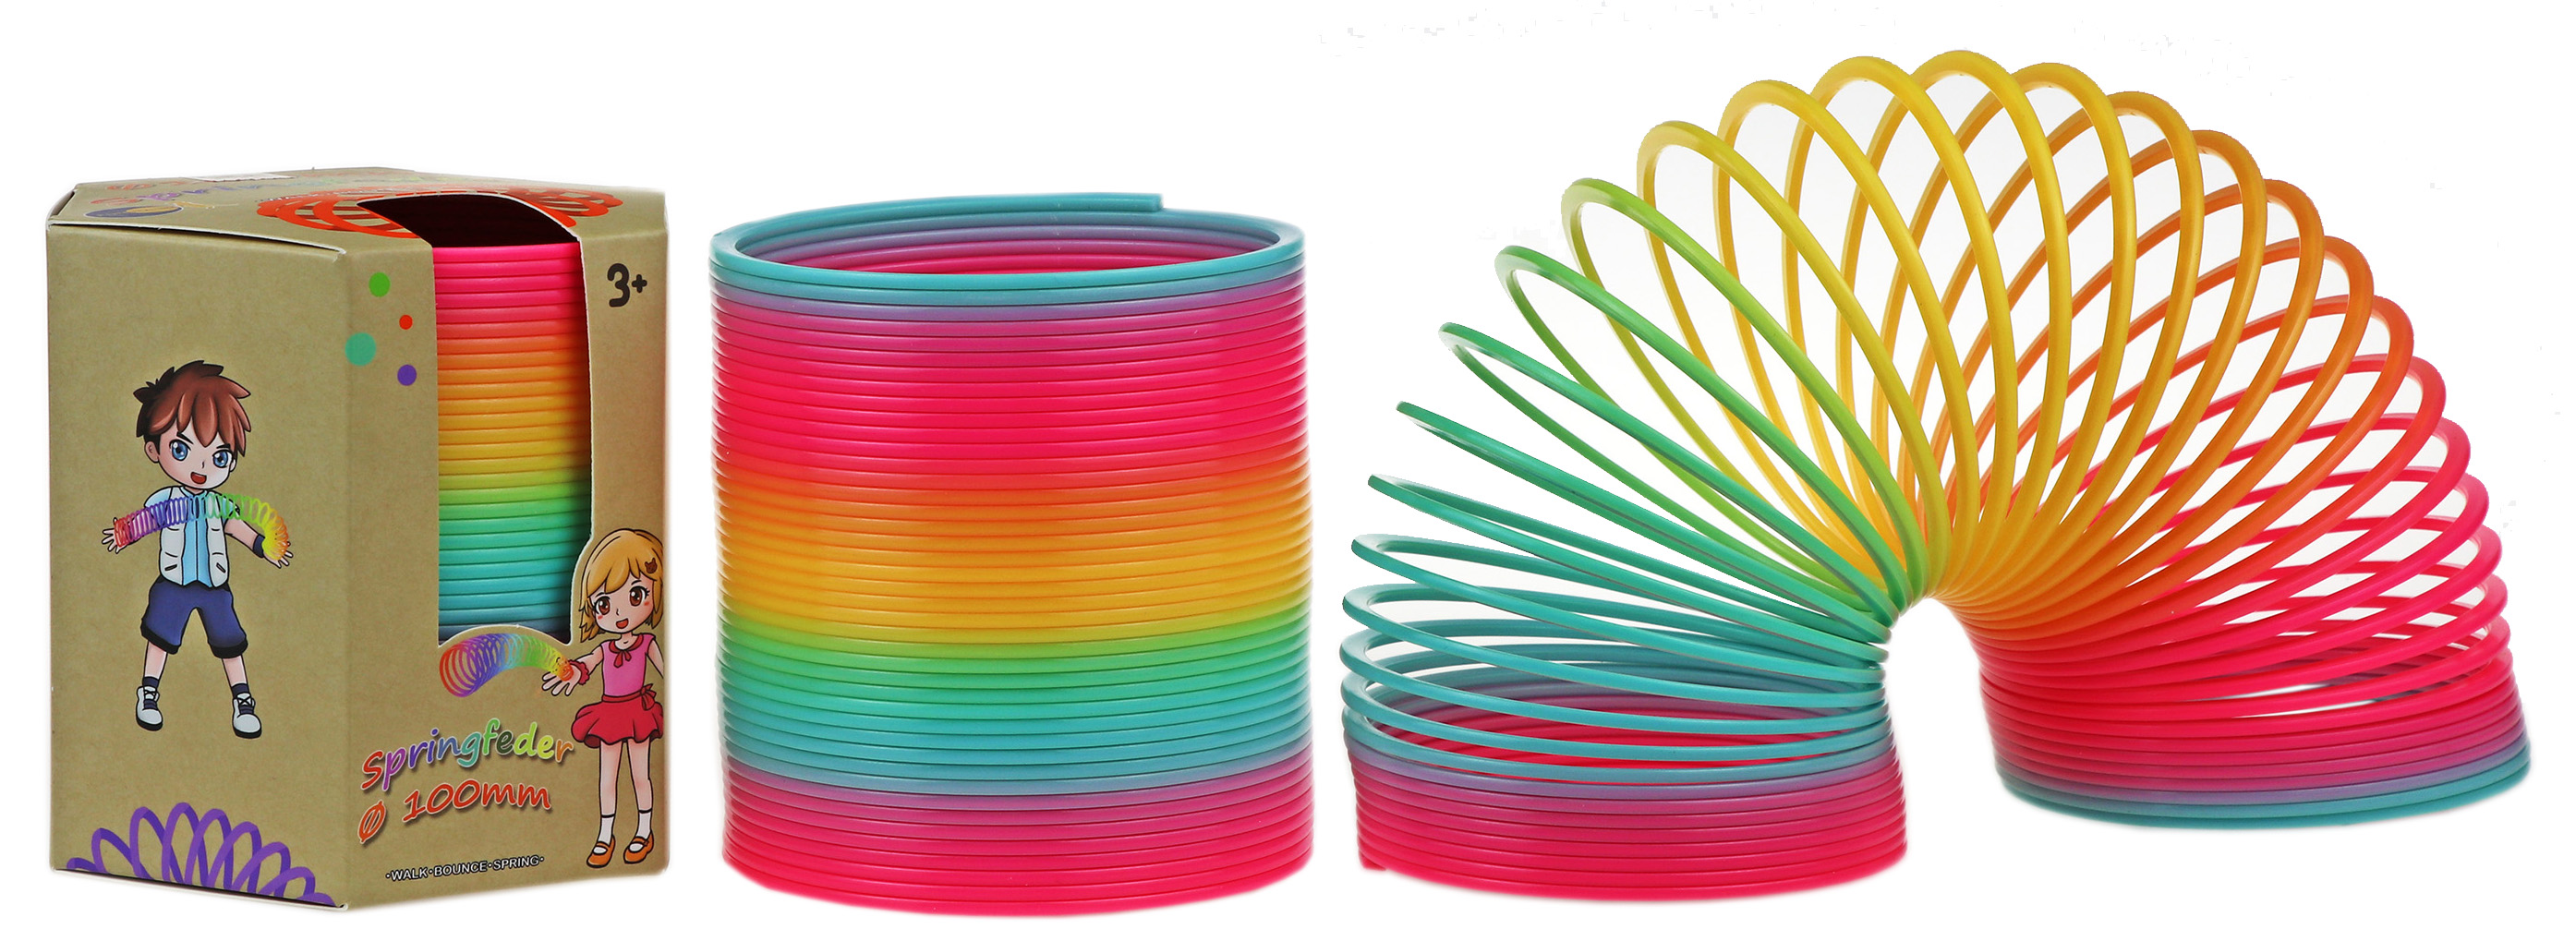 24x Regenbogenspirale 3,5 cm Neon Springfeder Treppenläufer Mitgebsel Spirale 